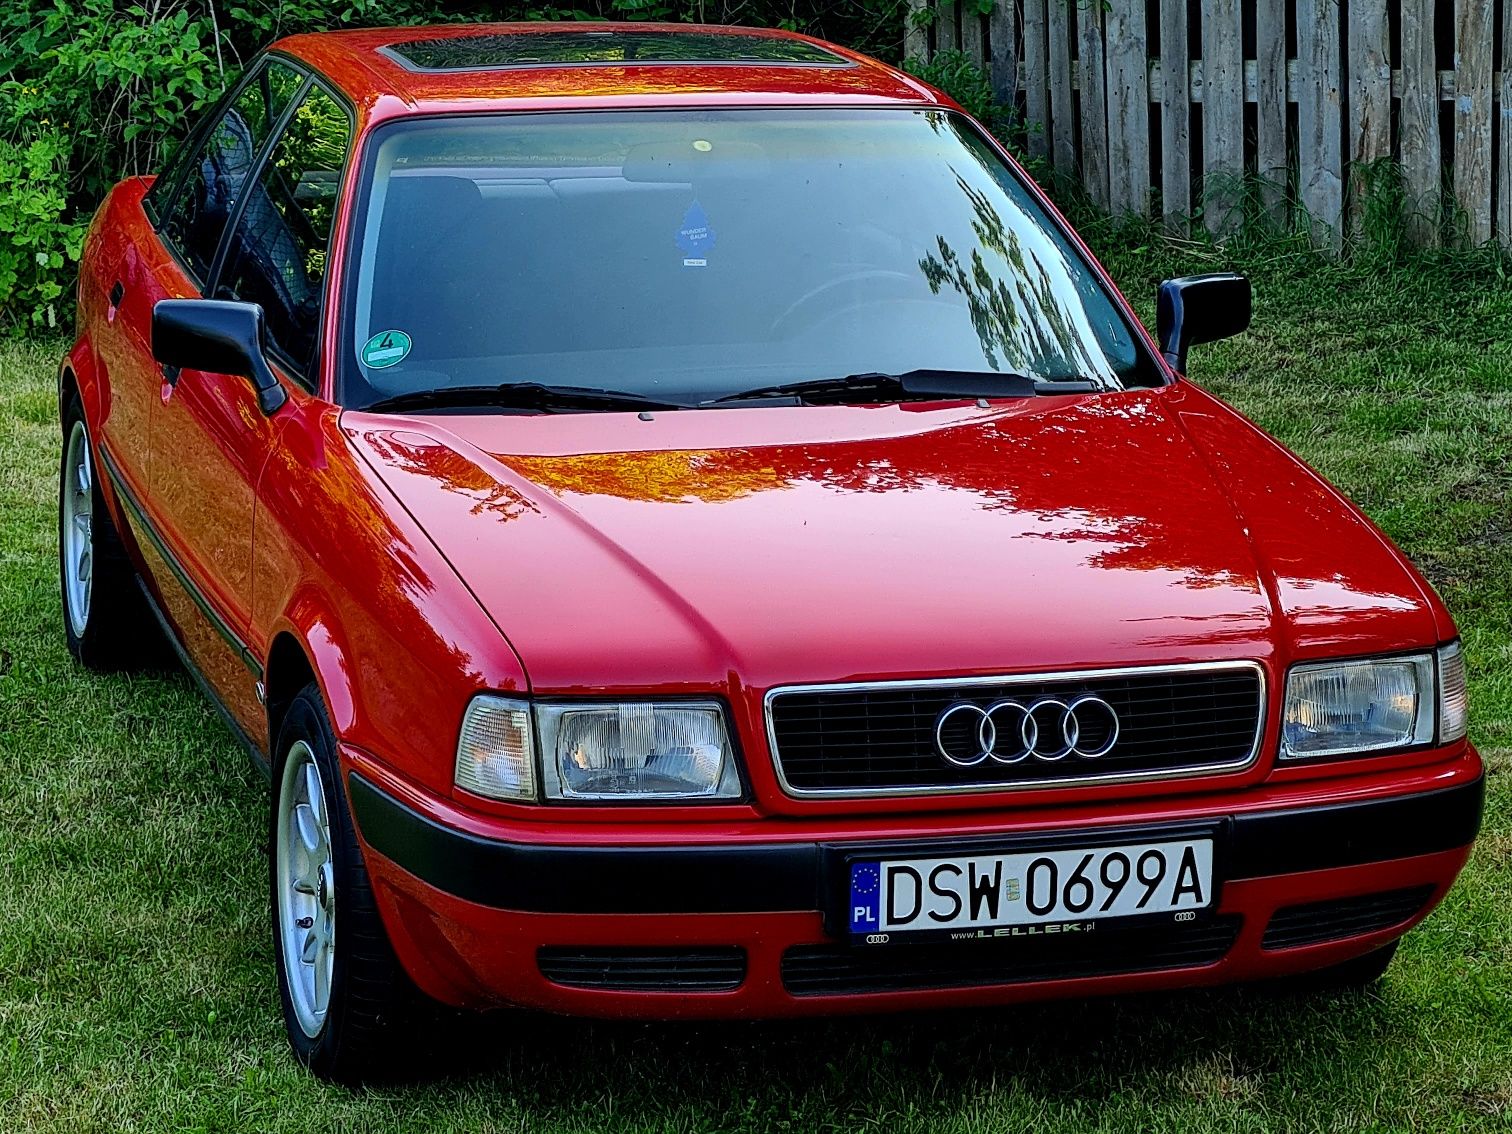 Audi 80 2.0 abk 1991r klasyk